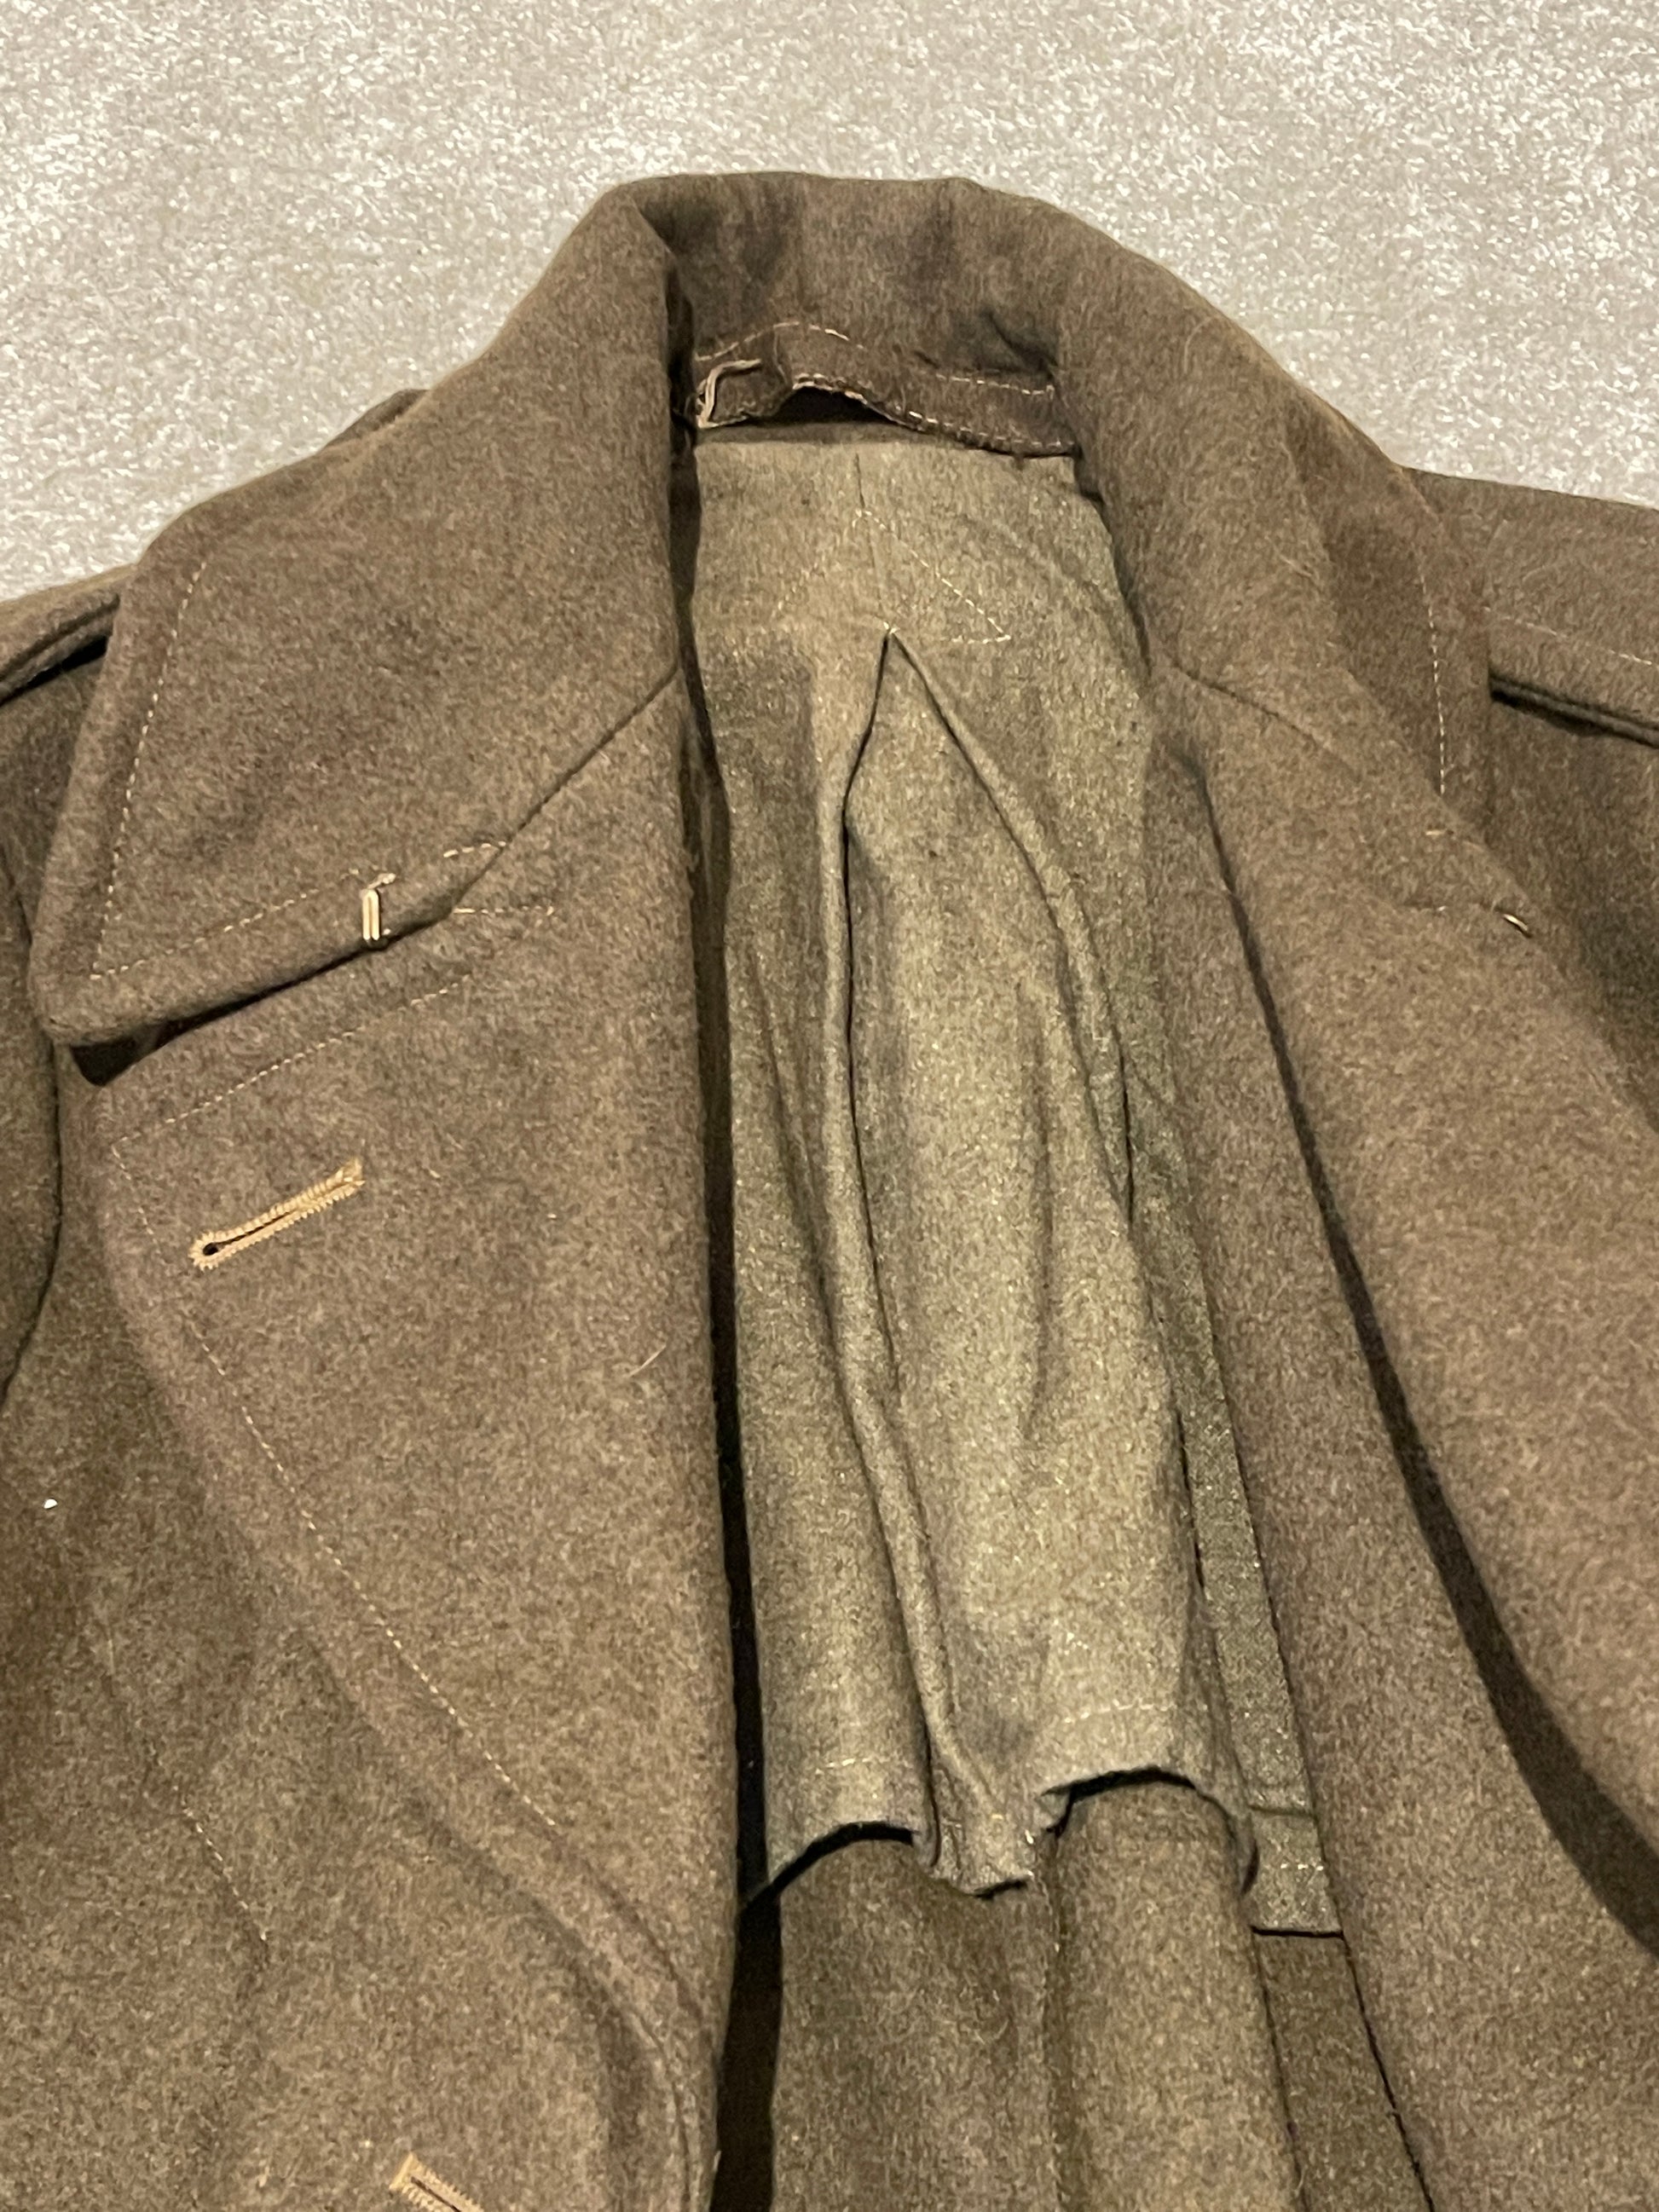 British Great Coat Dismounted 1940 Pattern collars